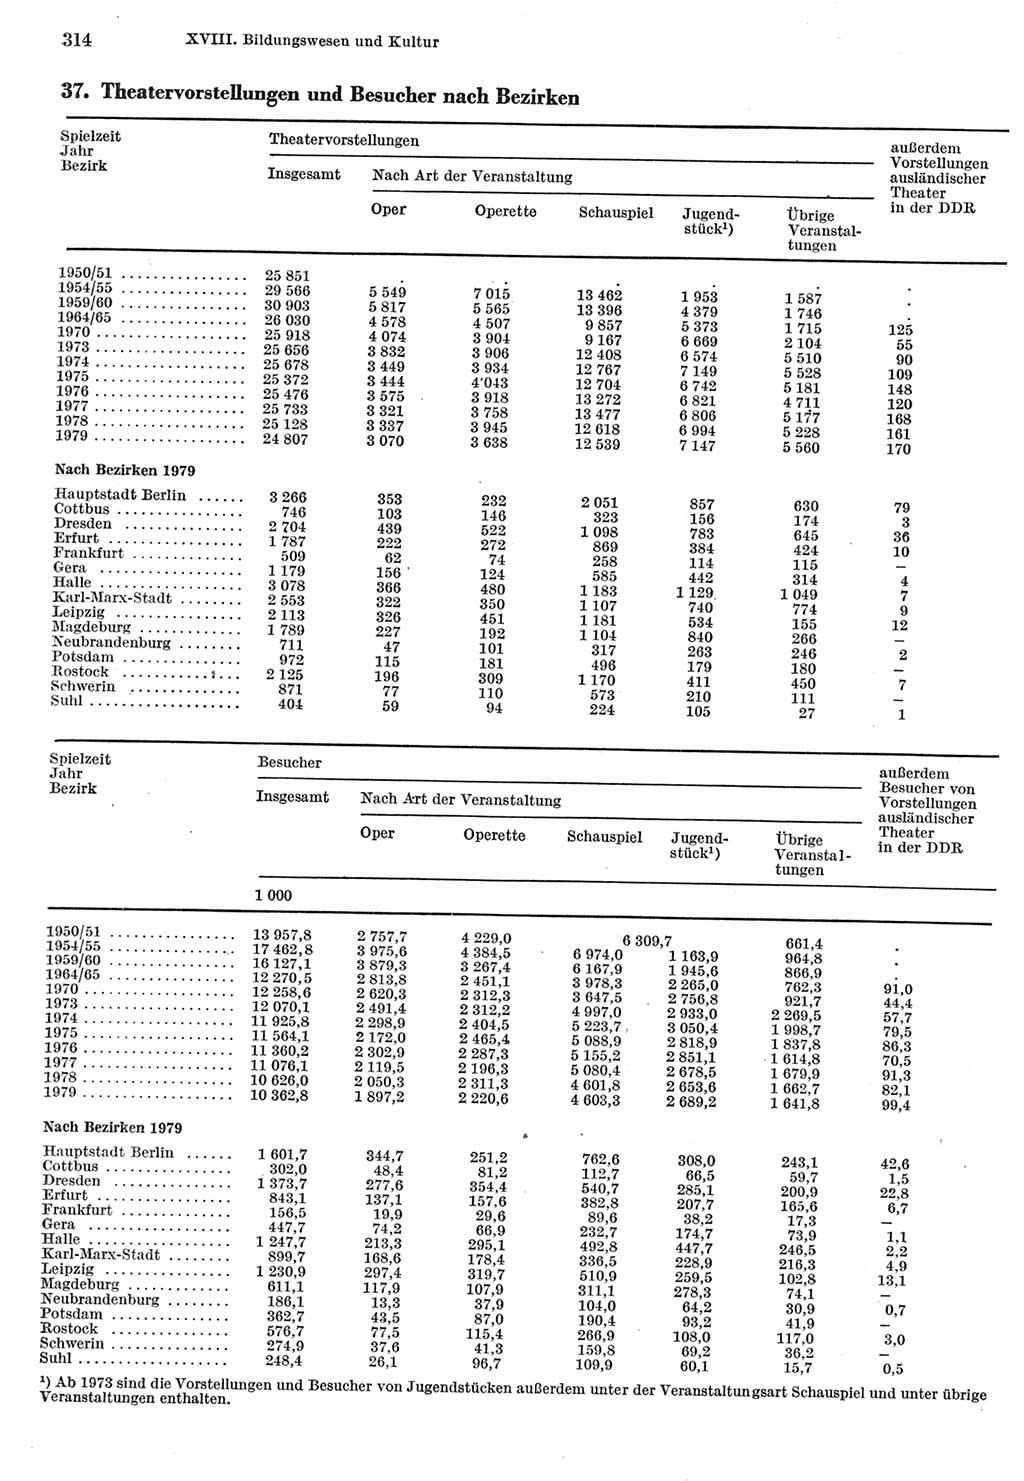 Statistisches Jahrbuch der Deutschen Demokratischen Republik (DDR) 1980, Seite 314 (Stat. Jb. DDR 1980, S. 314)